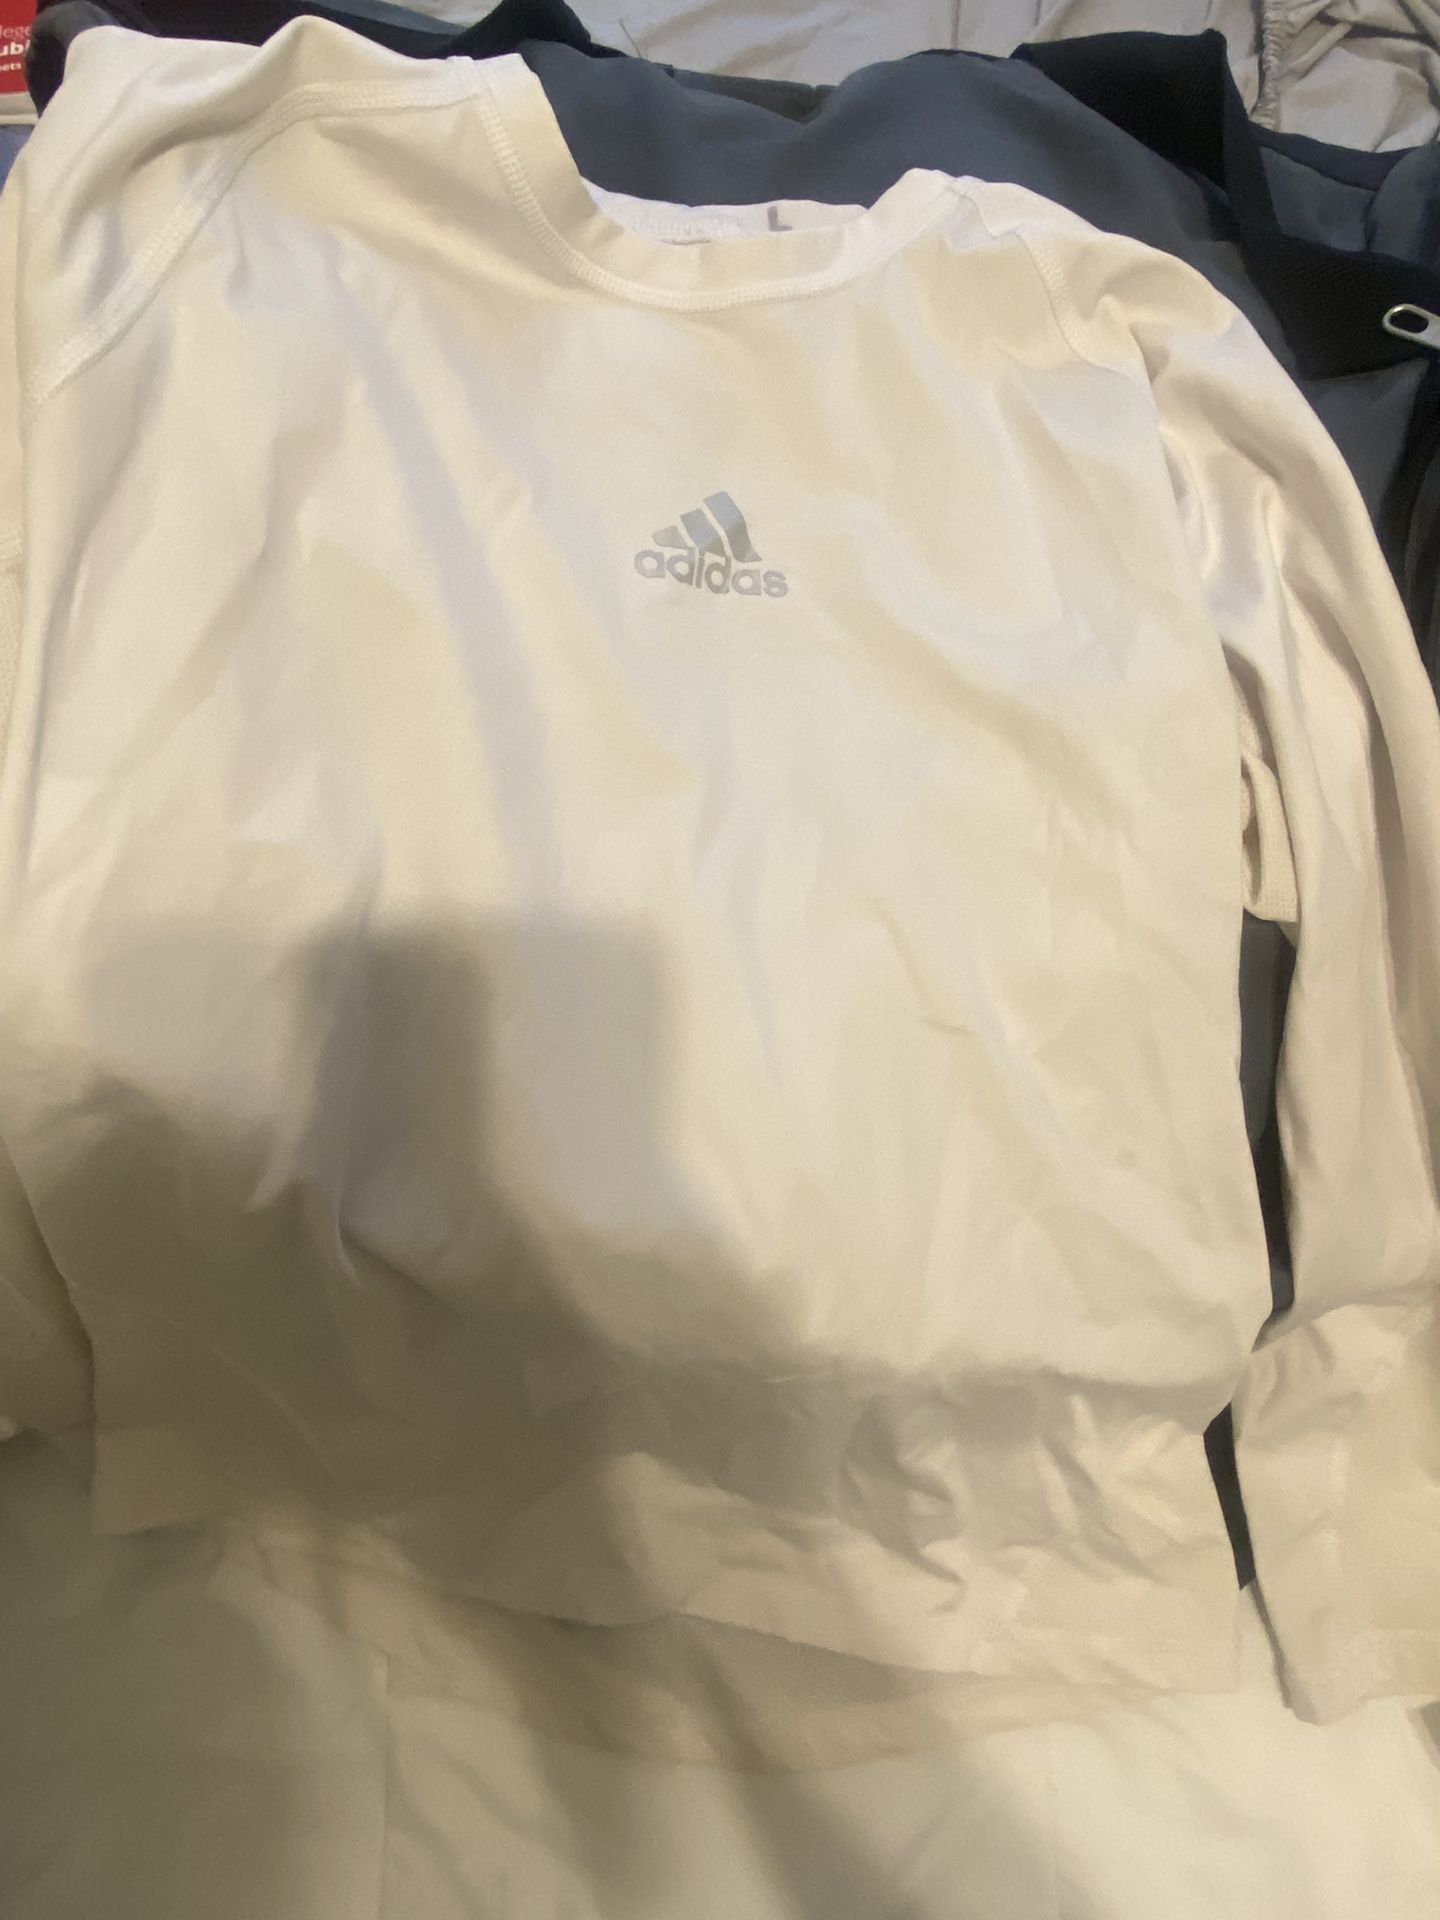 White Under Adidas Long Sleeve 